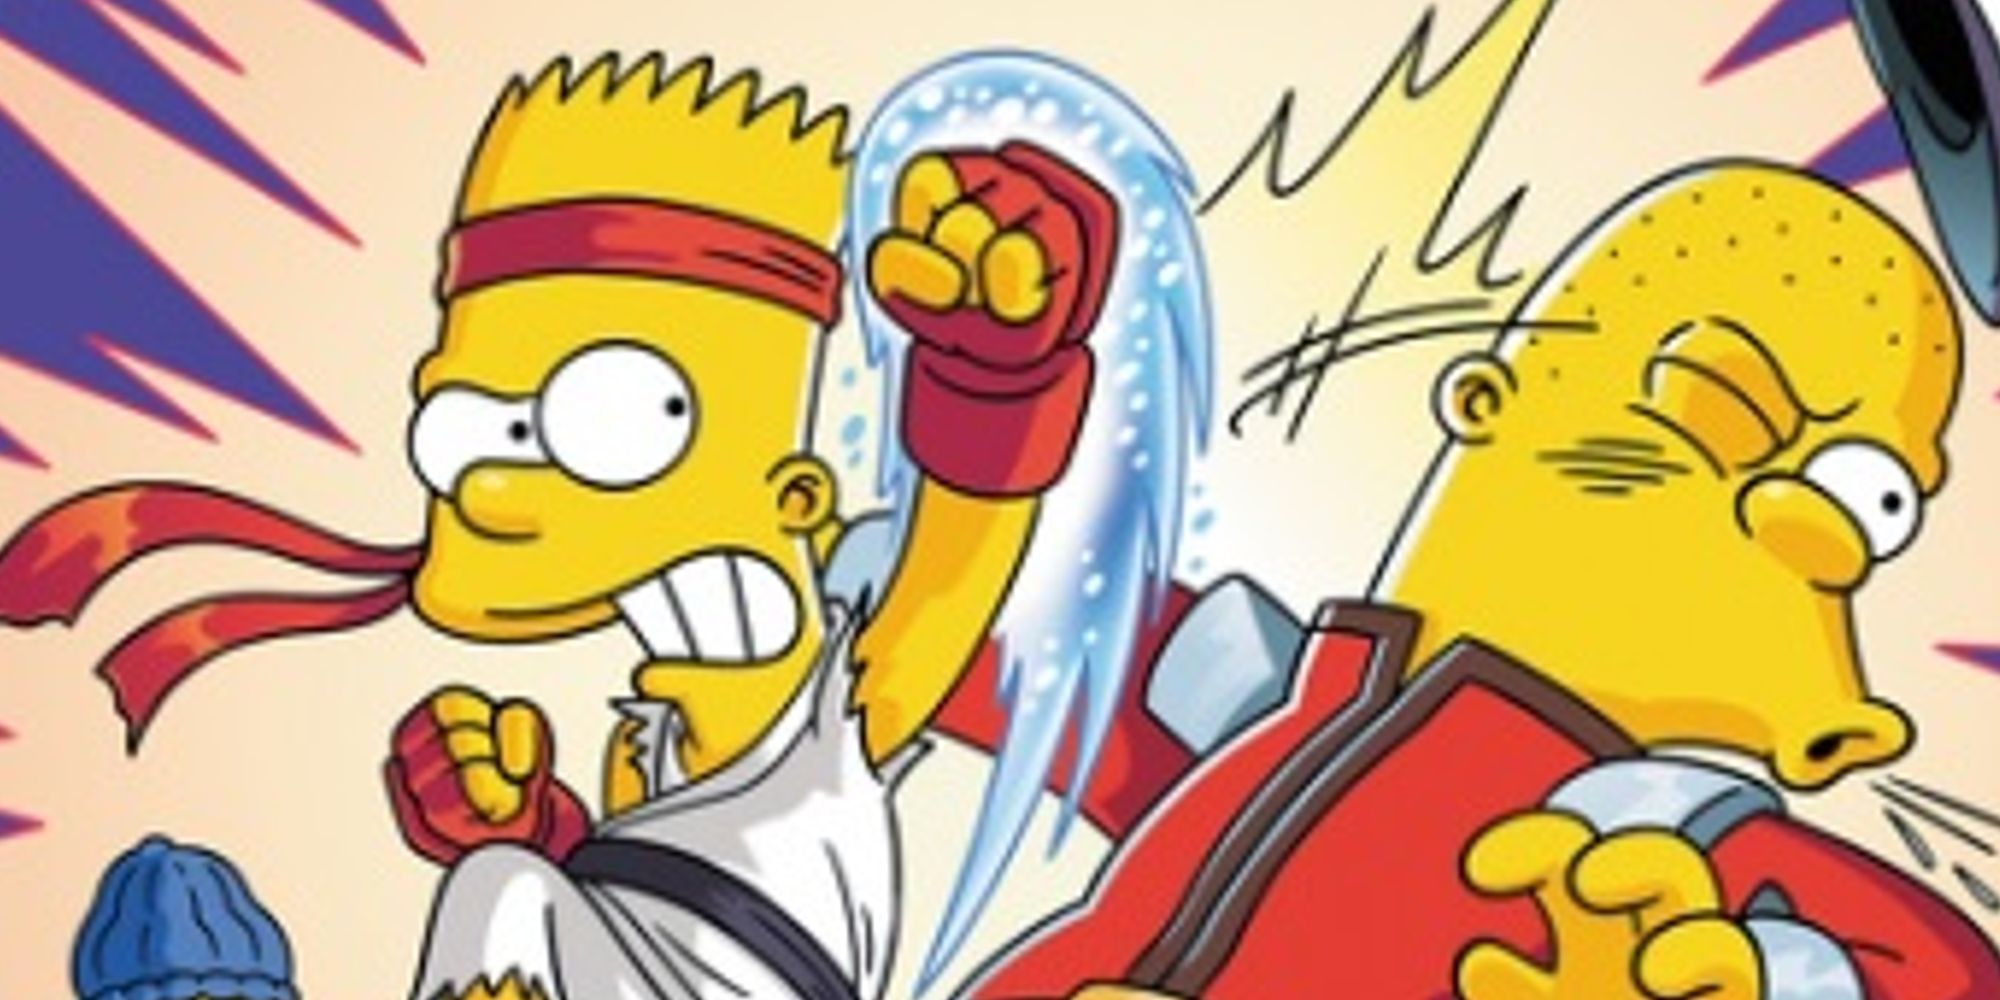 Los personajes de Los Simpson se convierten en sus homólogos de Street Fighter 2 en el arte